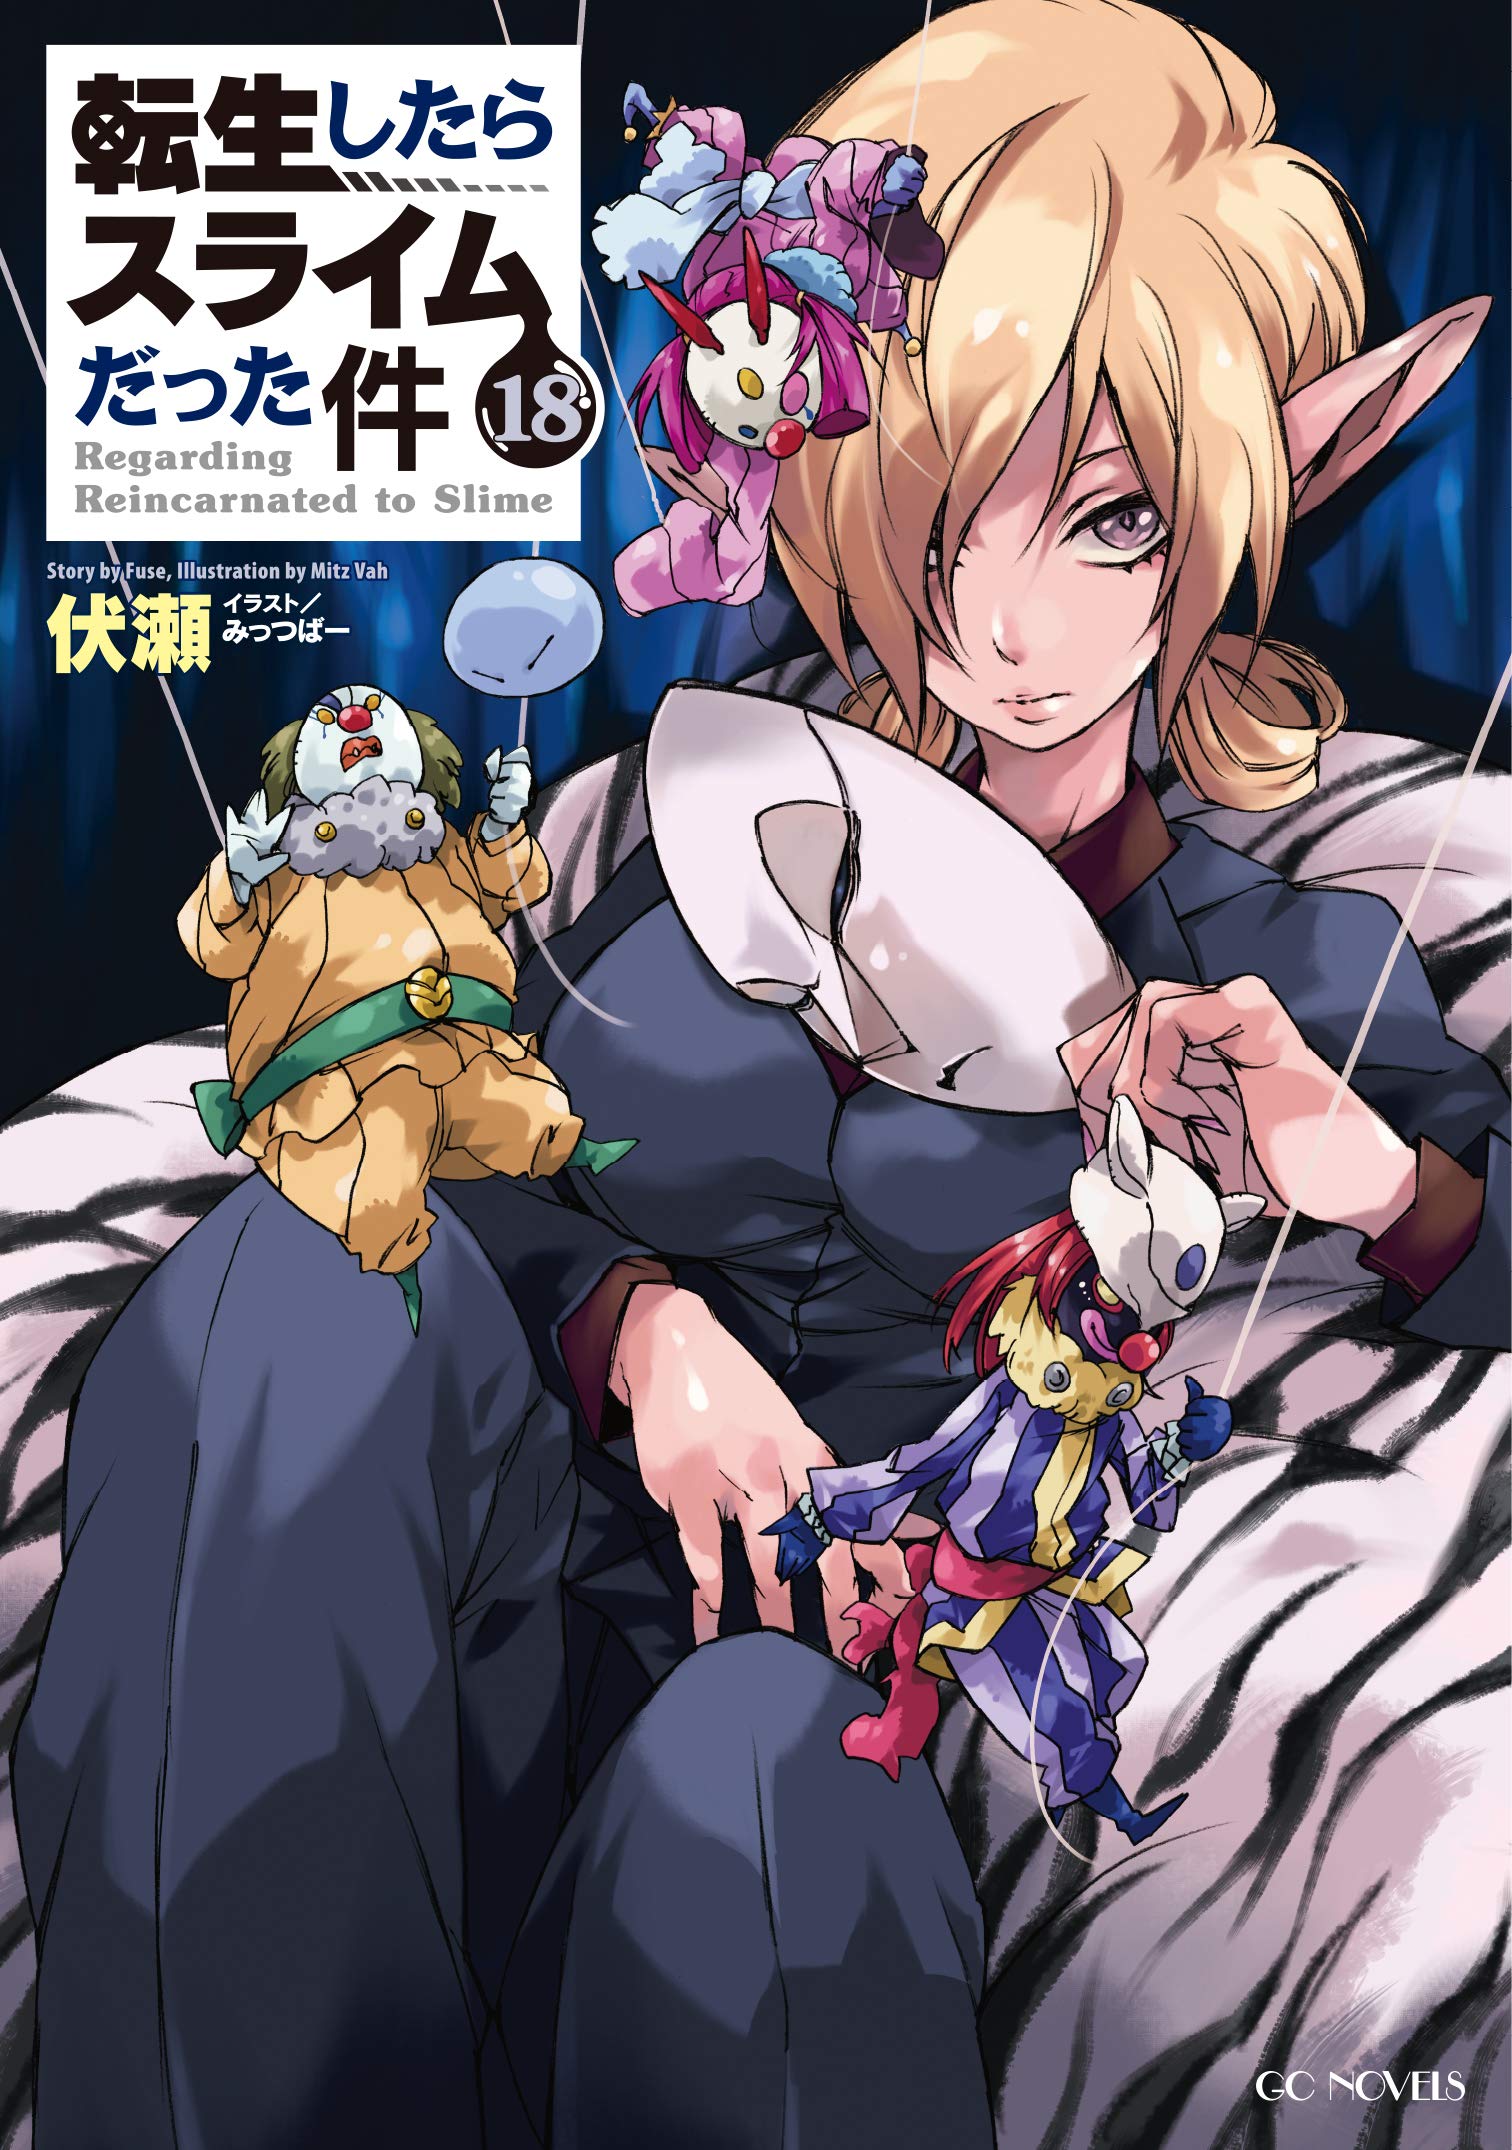 Tensei Shitara Slime Datta Ken  Anime, Illustration, Light novel